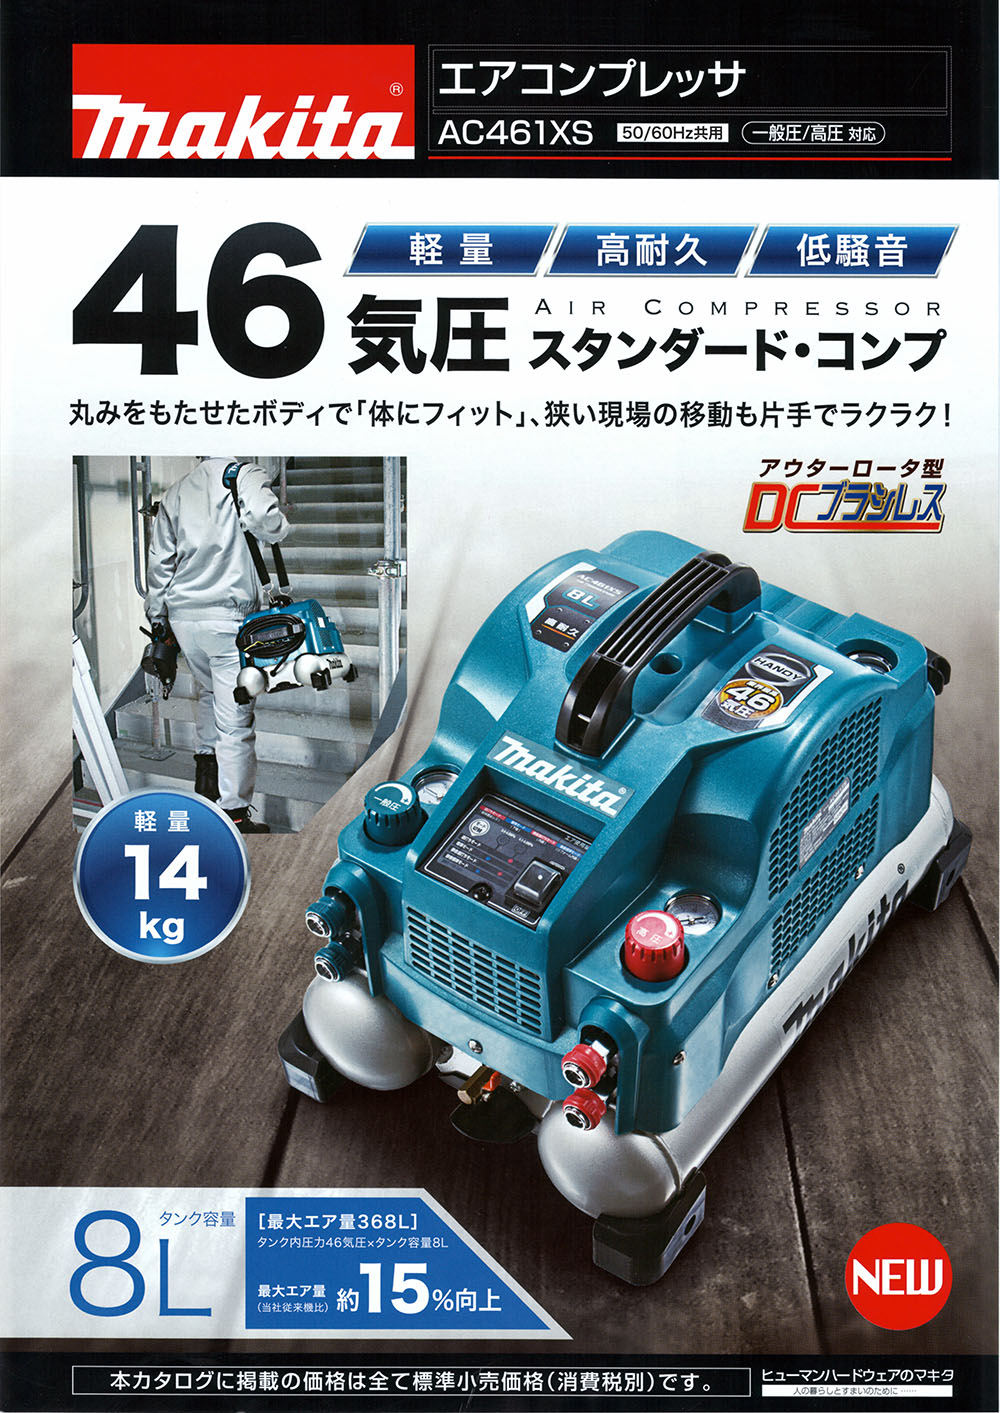 高圧/常圧コンプレッサー☆マキタ☆AC461XS☆8リットル - 工具 